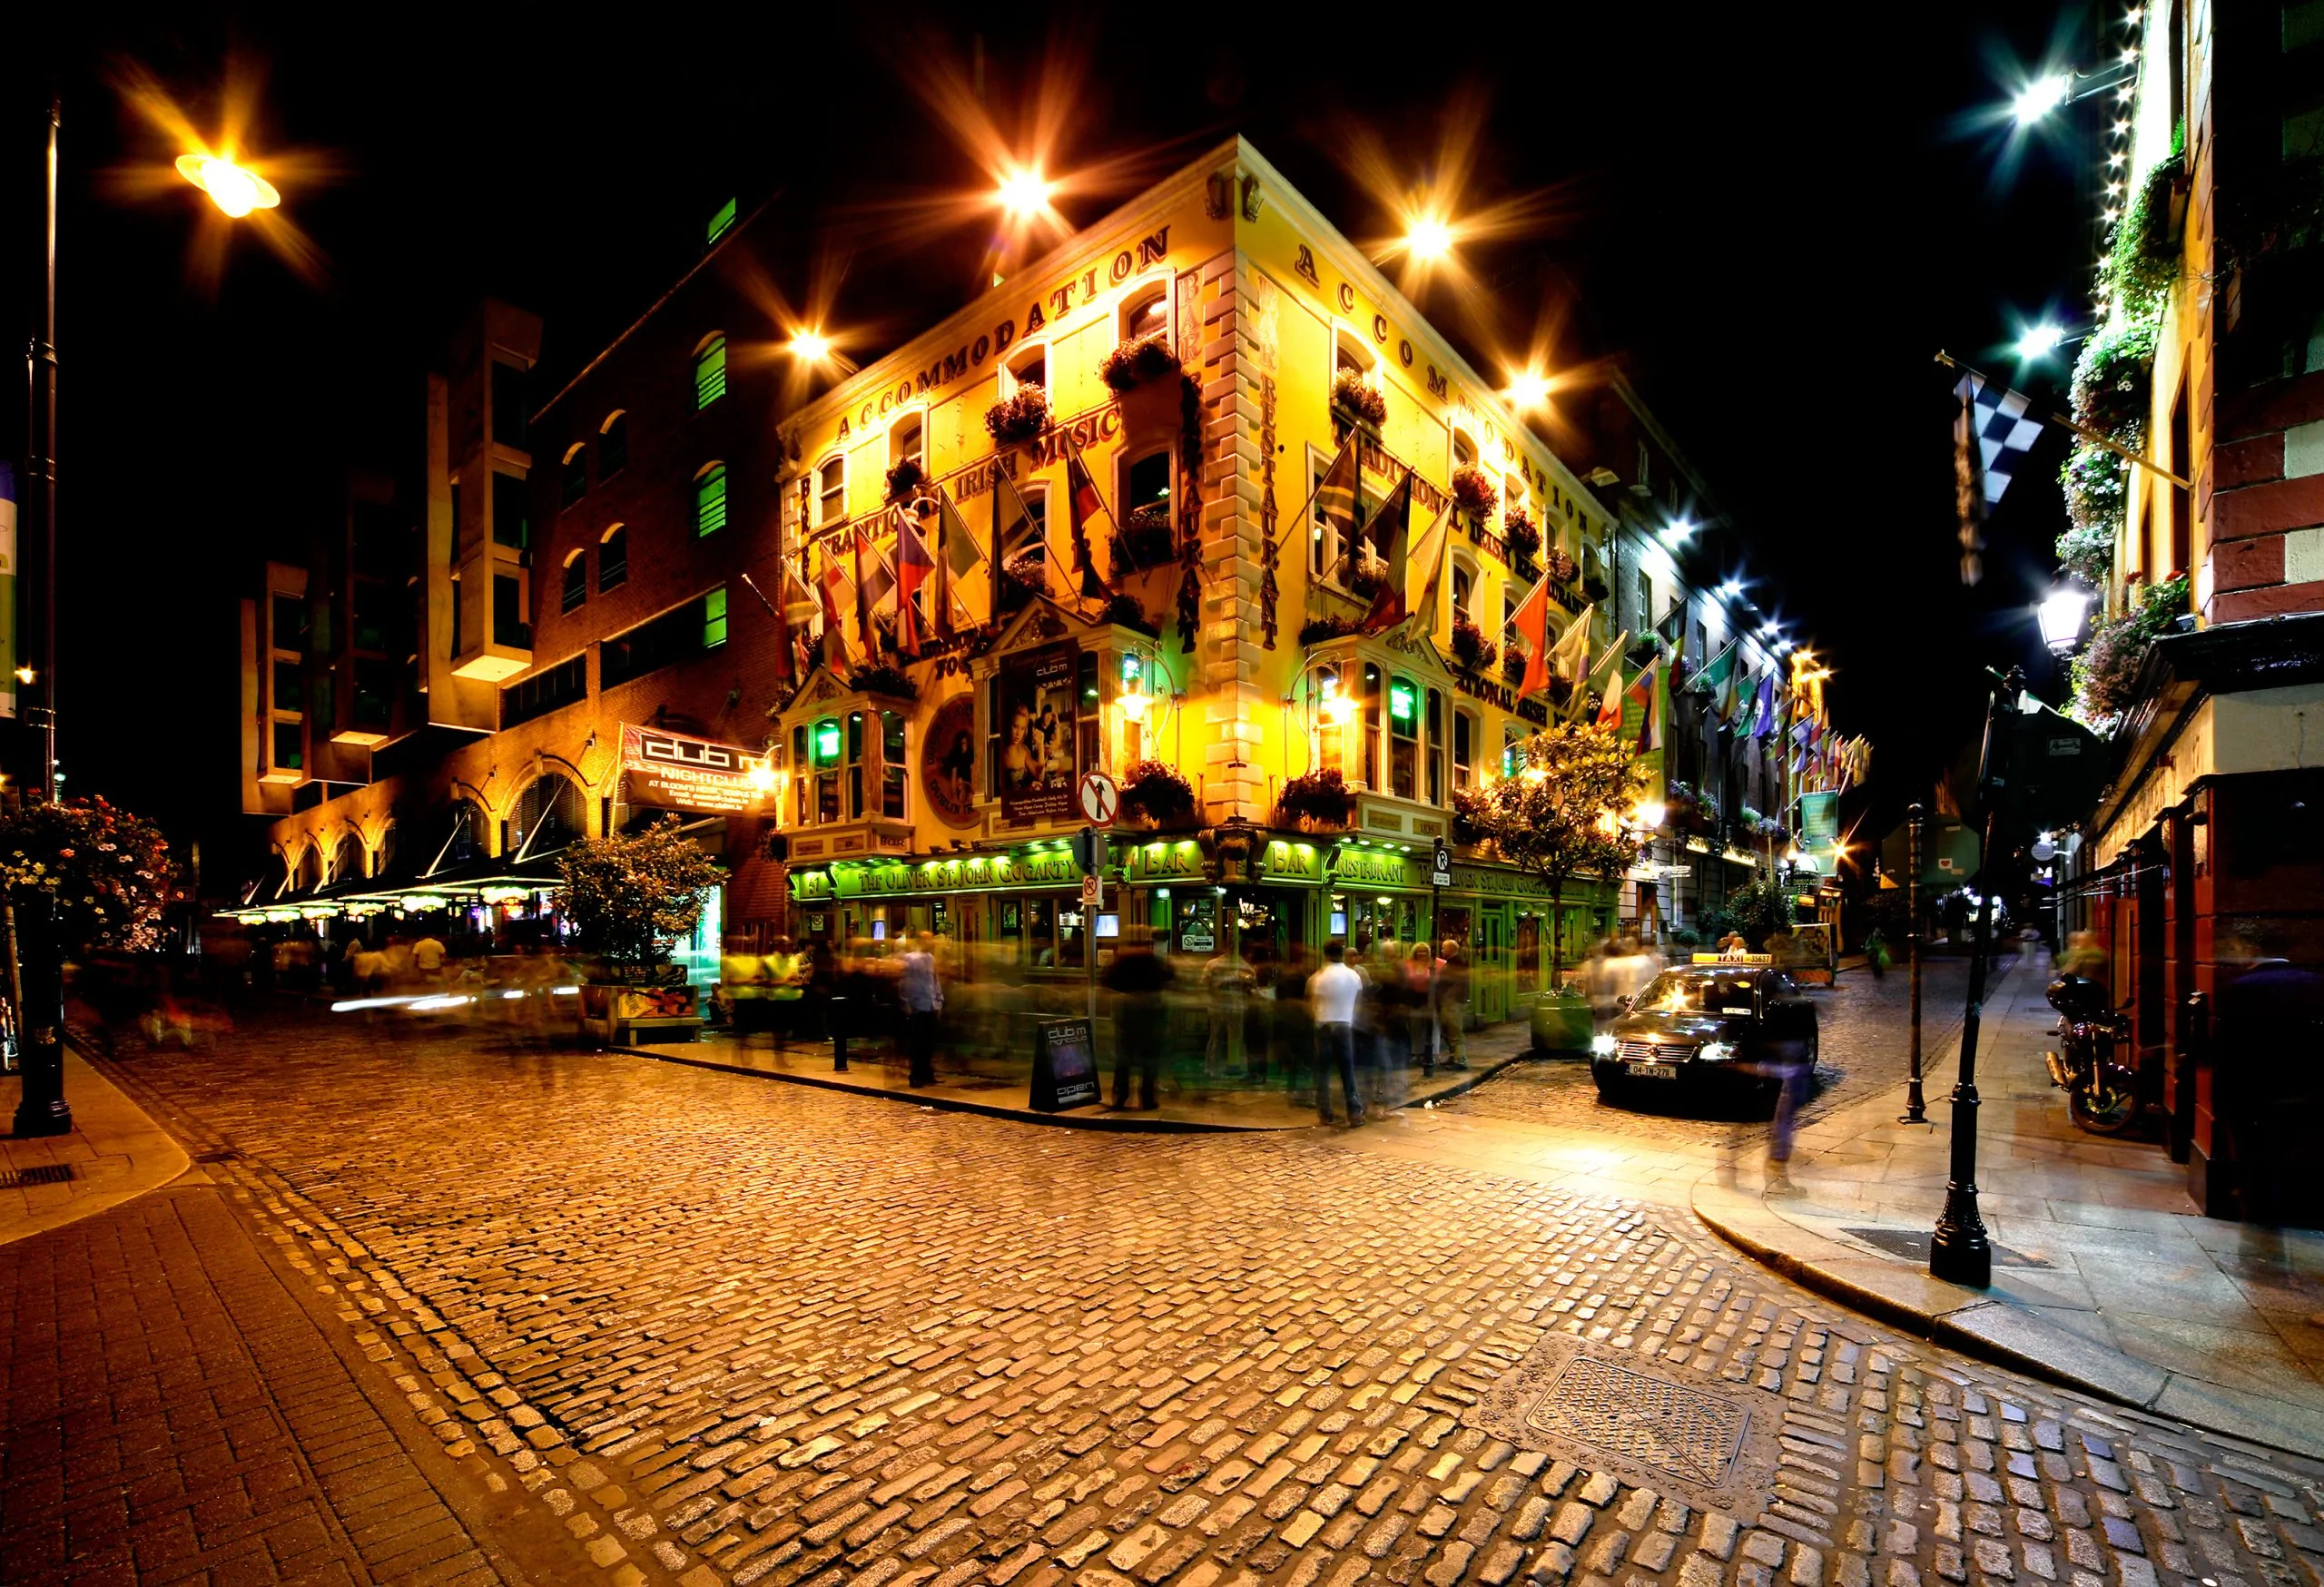 Vue nocturne de la rue Temple Bar à Dublin, Irlande